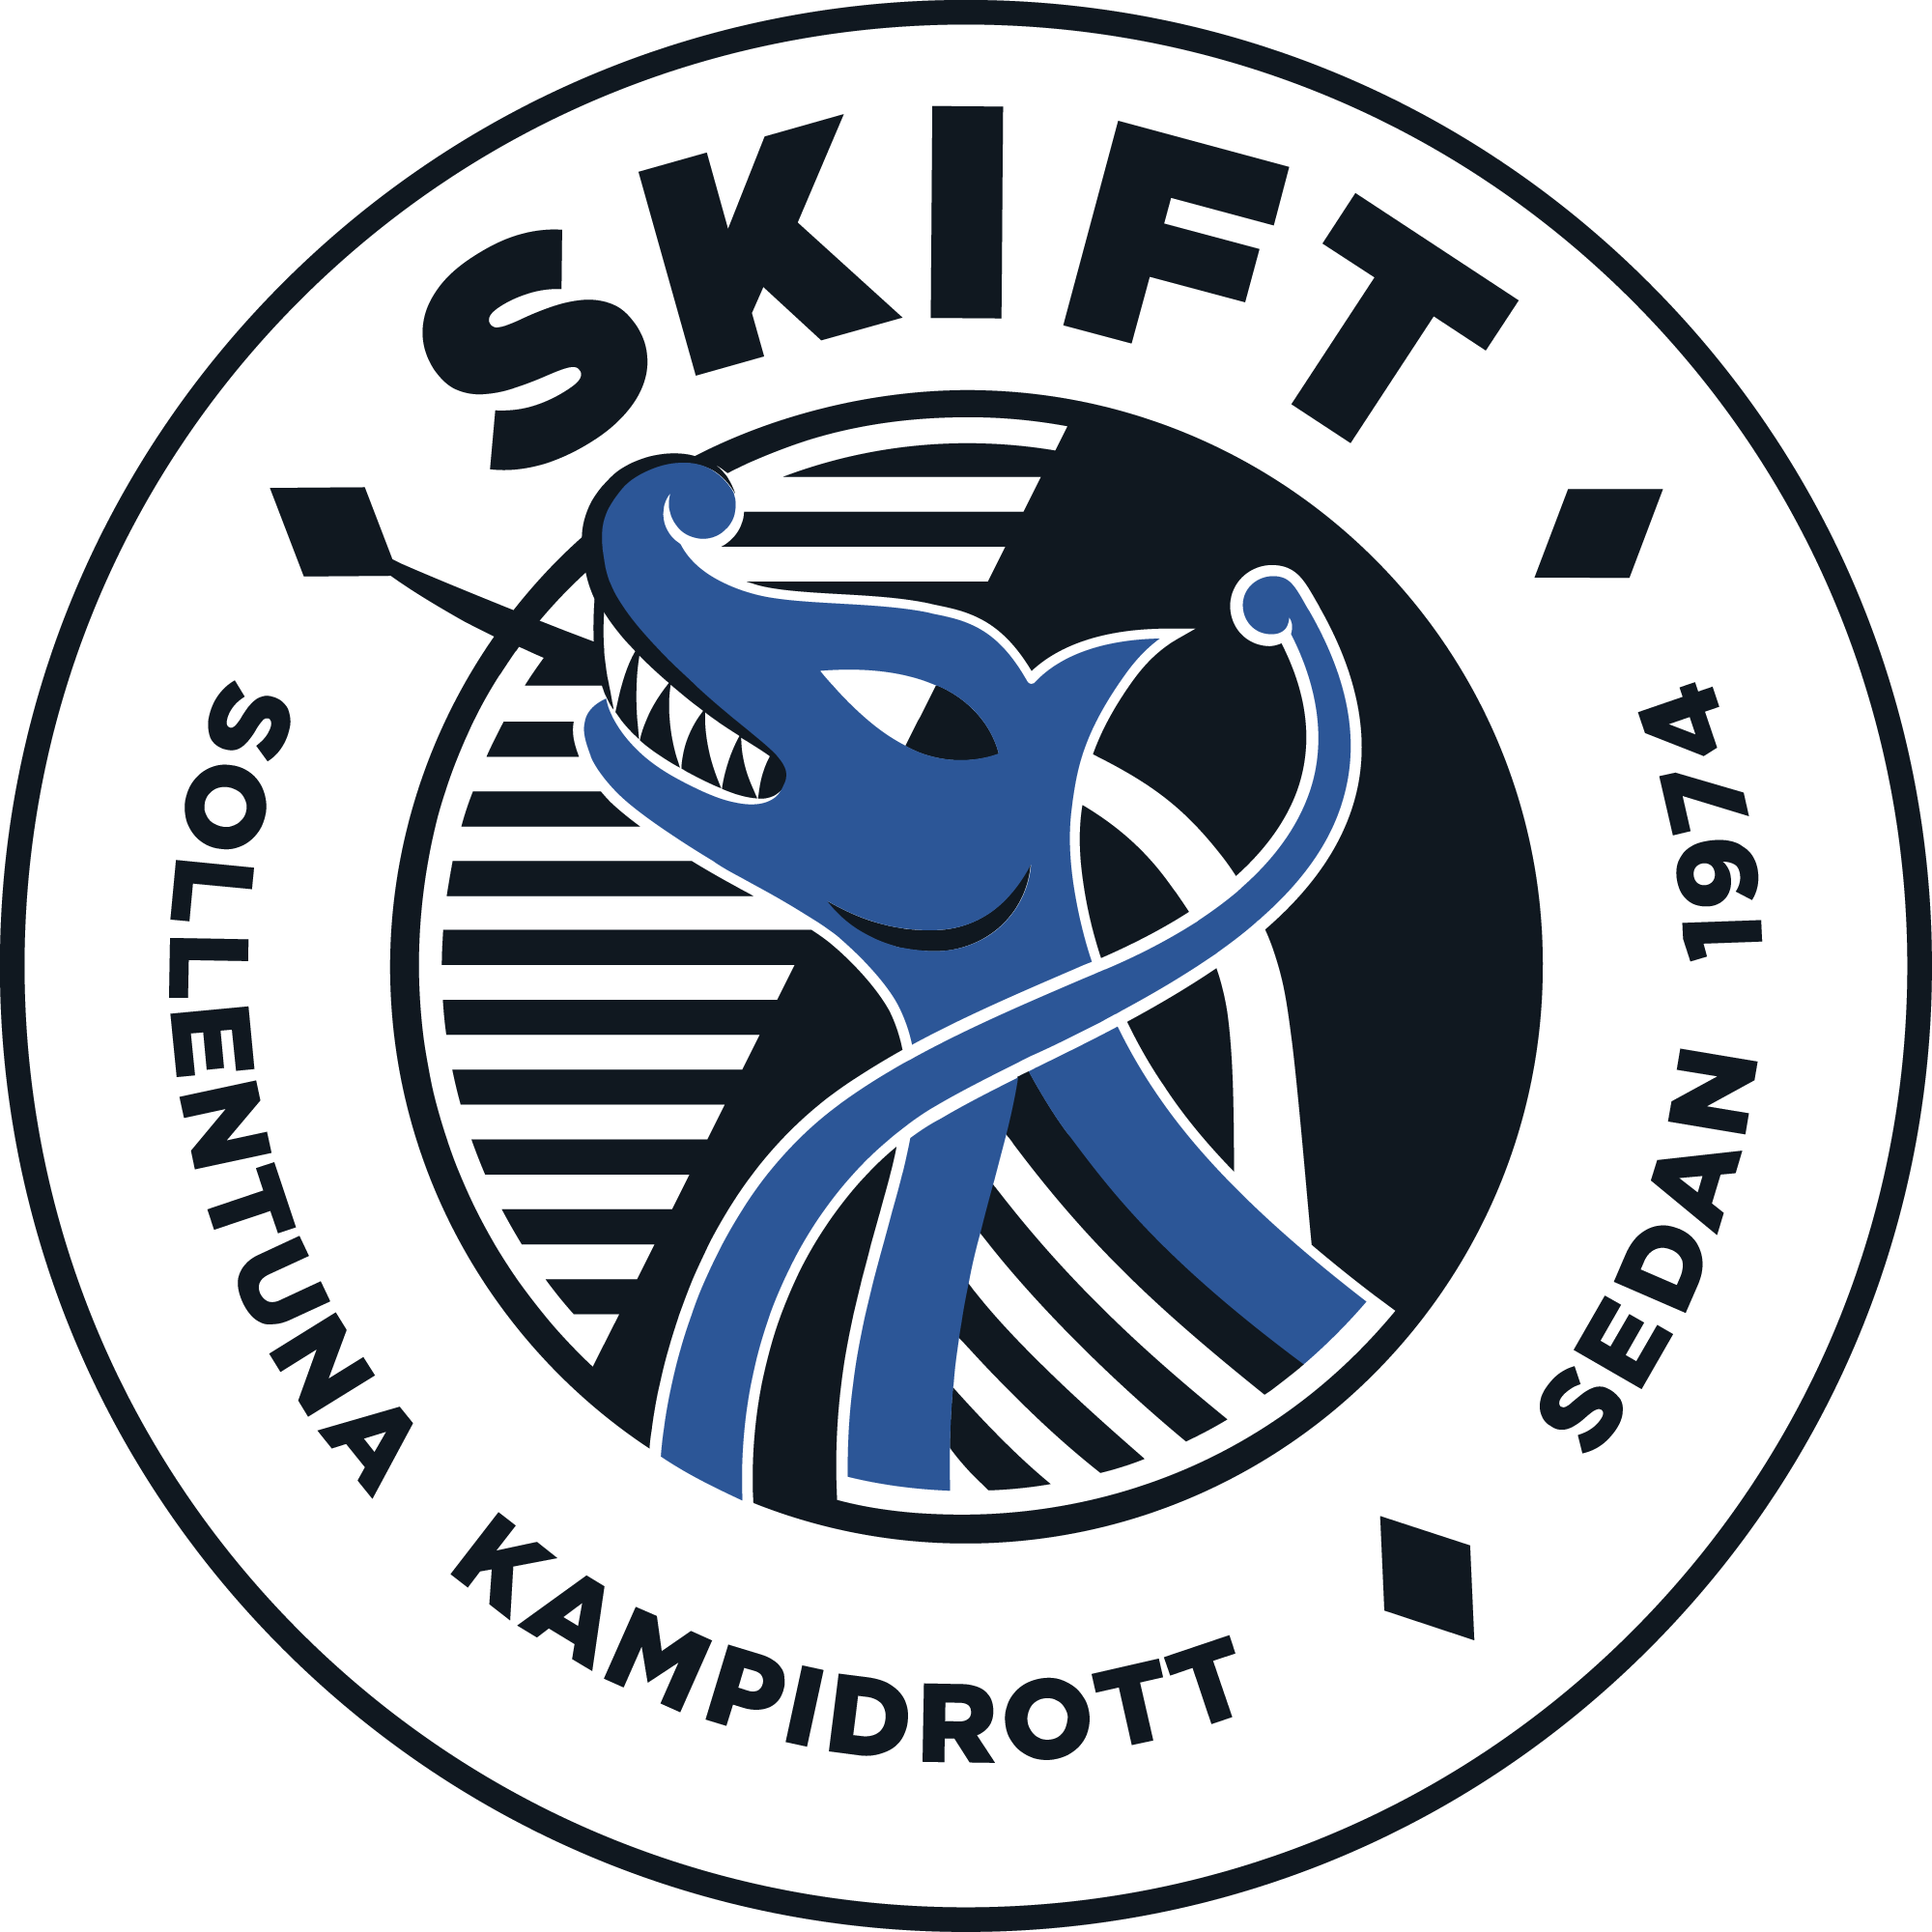 SKIFT – Sollentuna Kampidrottsförening